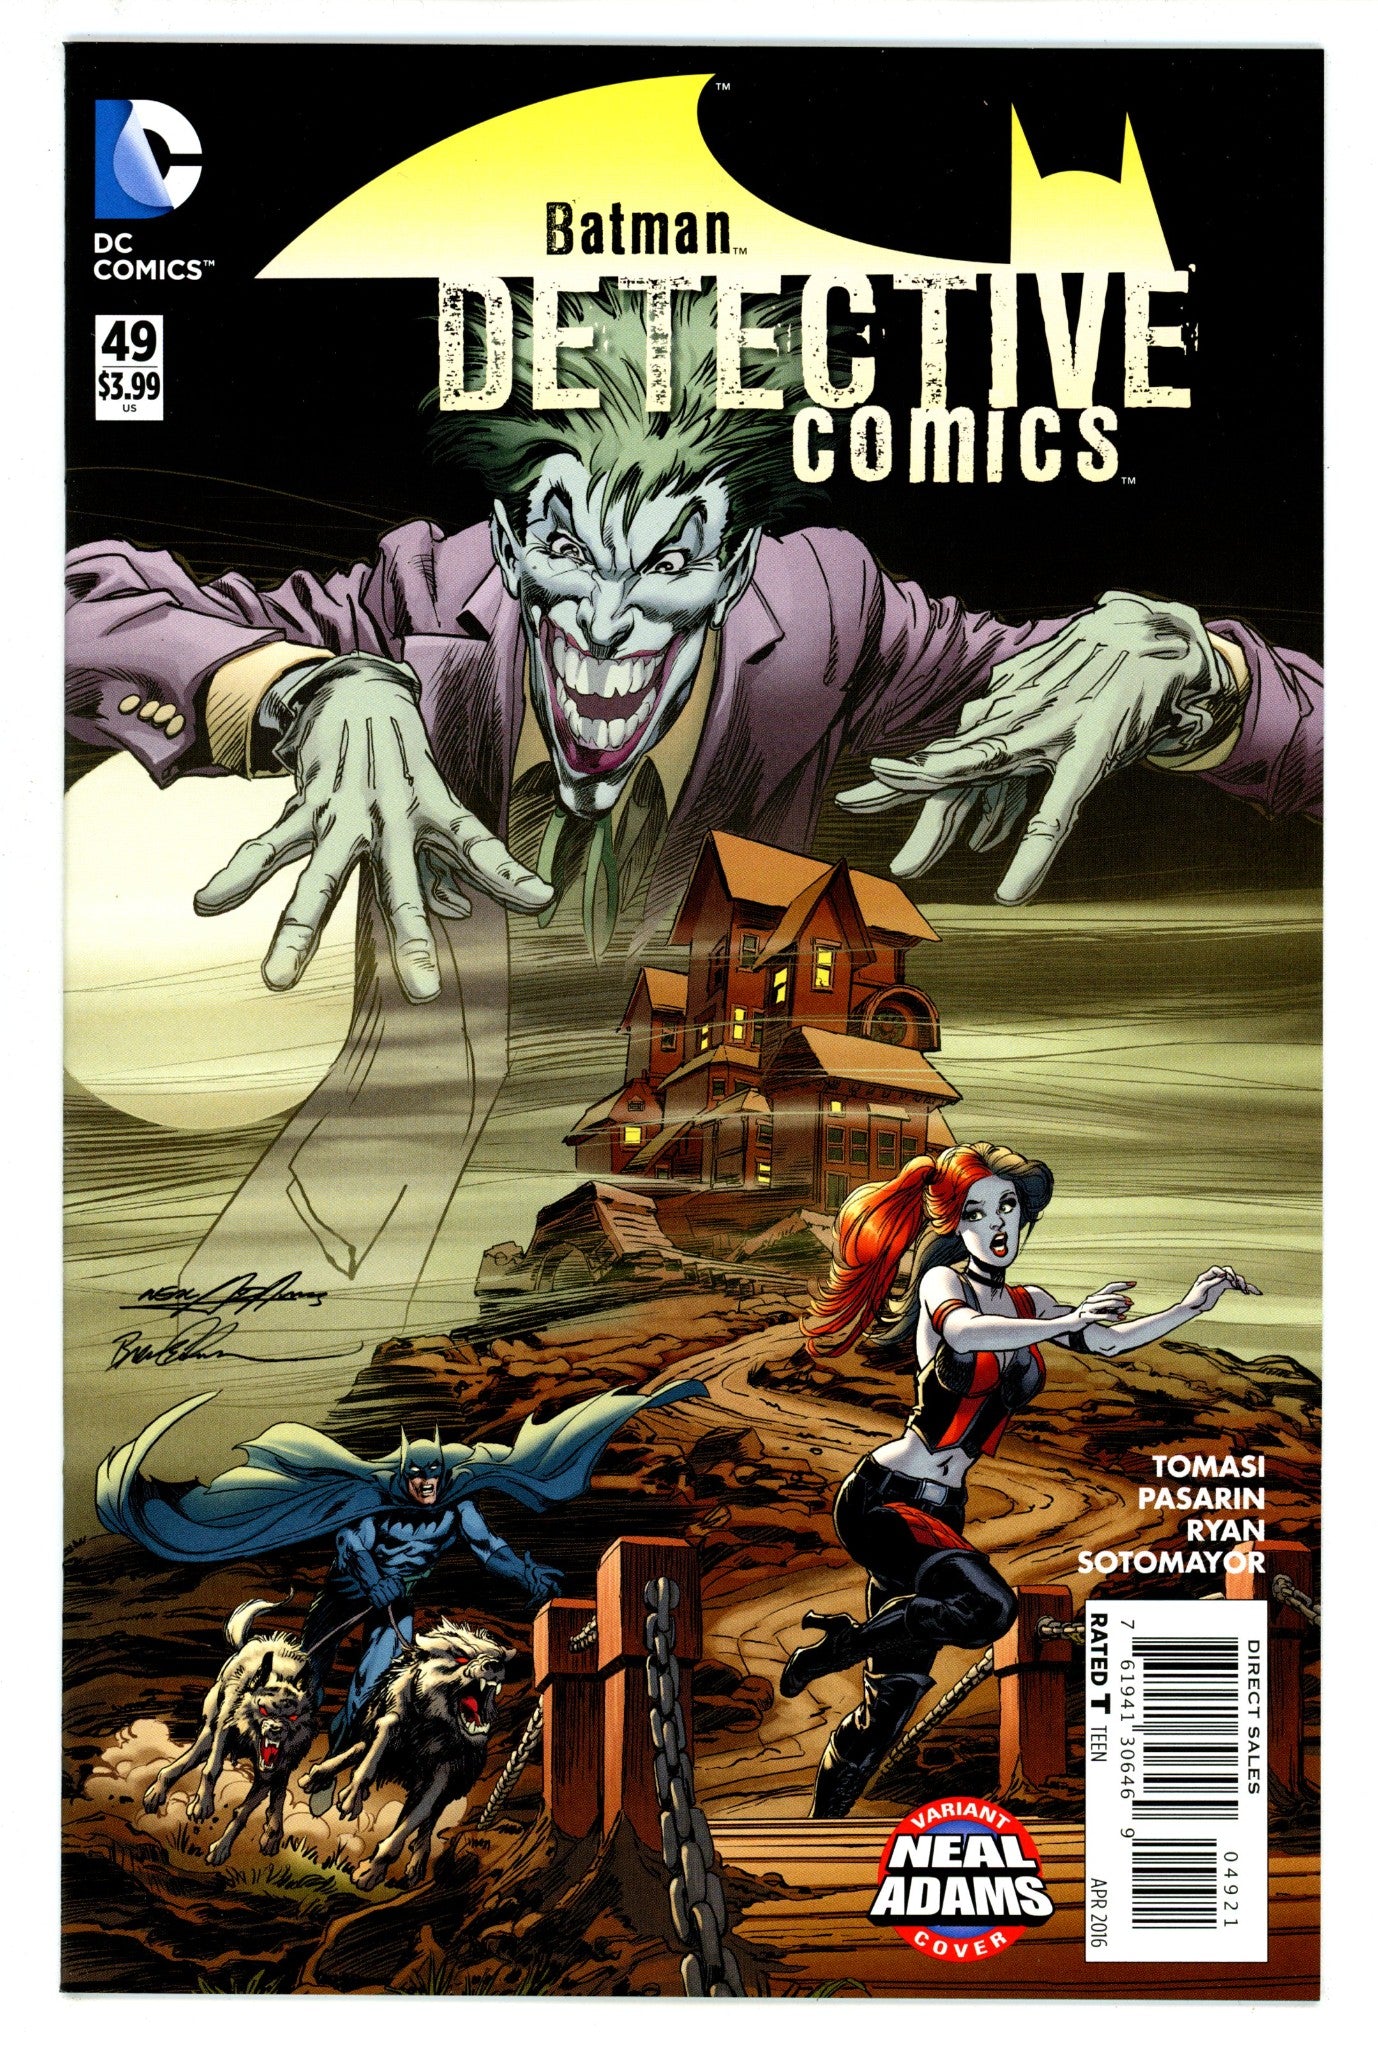 Detective Comics Vol 2 49 VF/NM (9.0) (2016) Adams Variant 